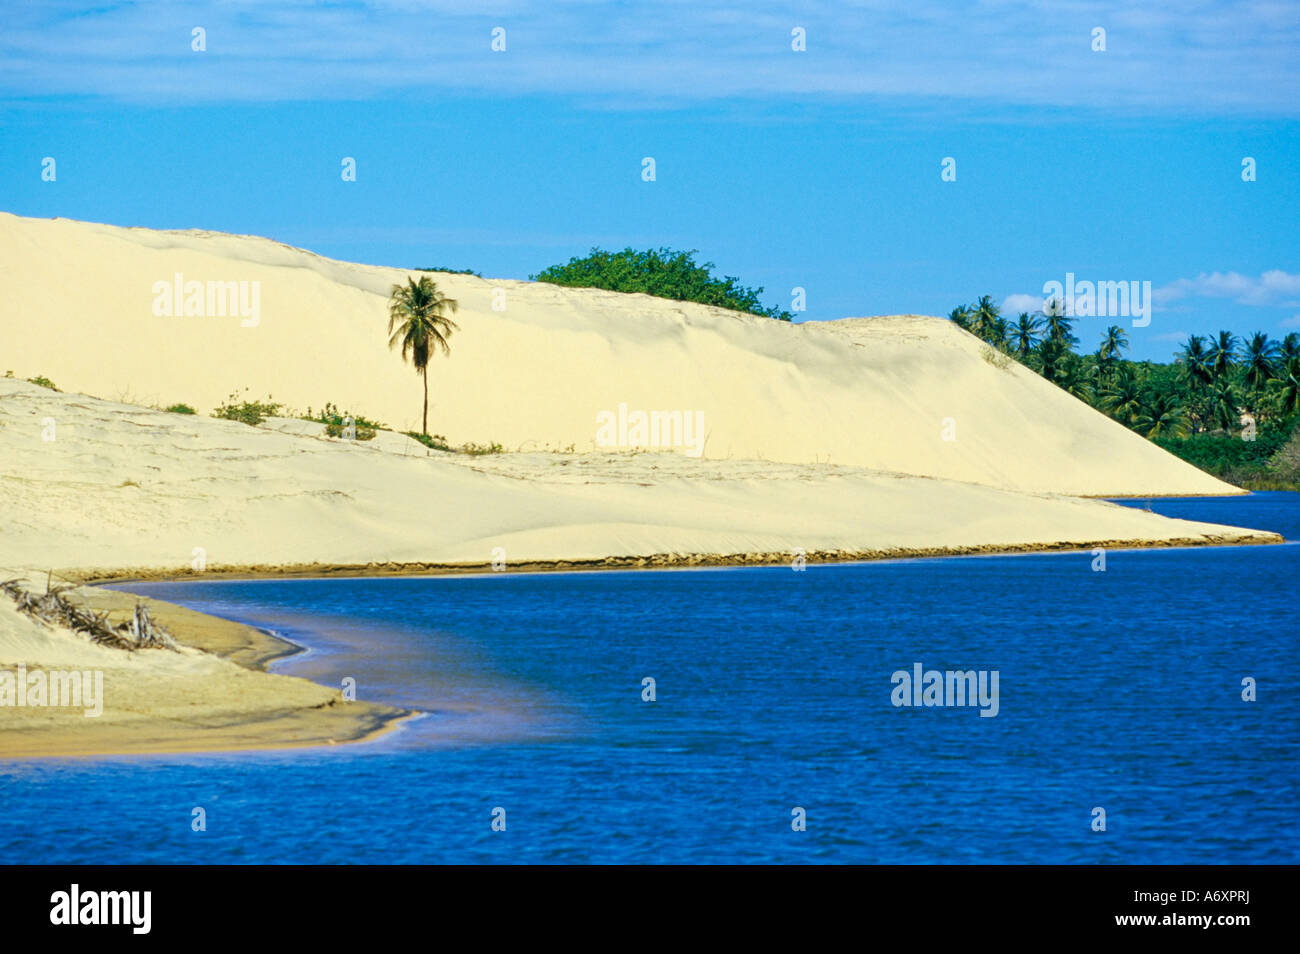 Palmen, Sanddünen und einer Lagune in der Nähe des Ceara-Küste in der Nähe von Canoa Quedrada Ceara Brasilien Südamerika Stockfoto